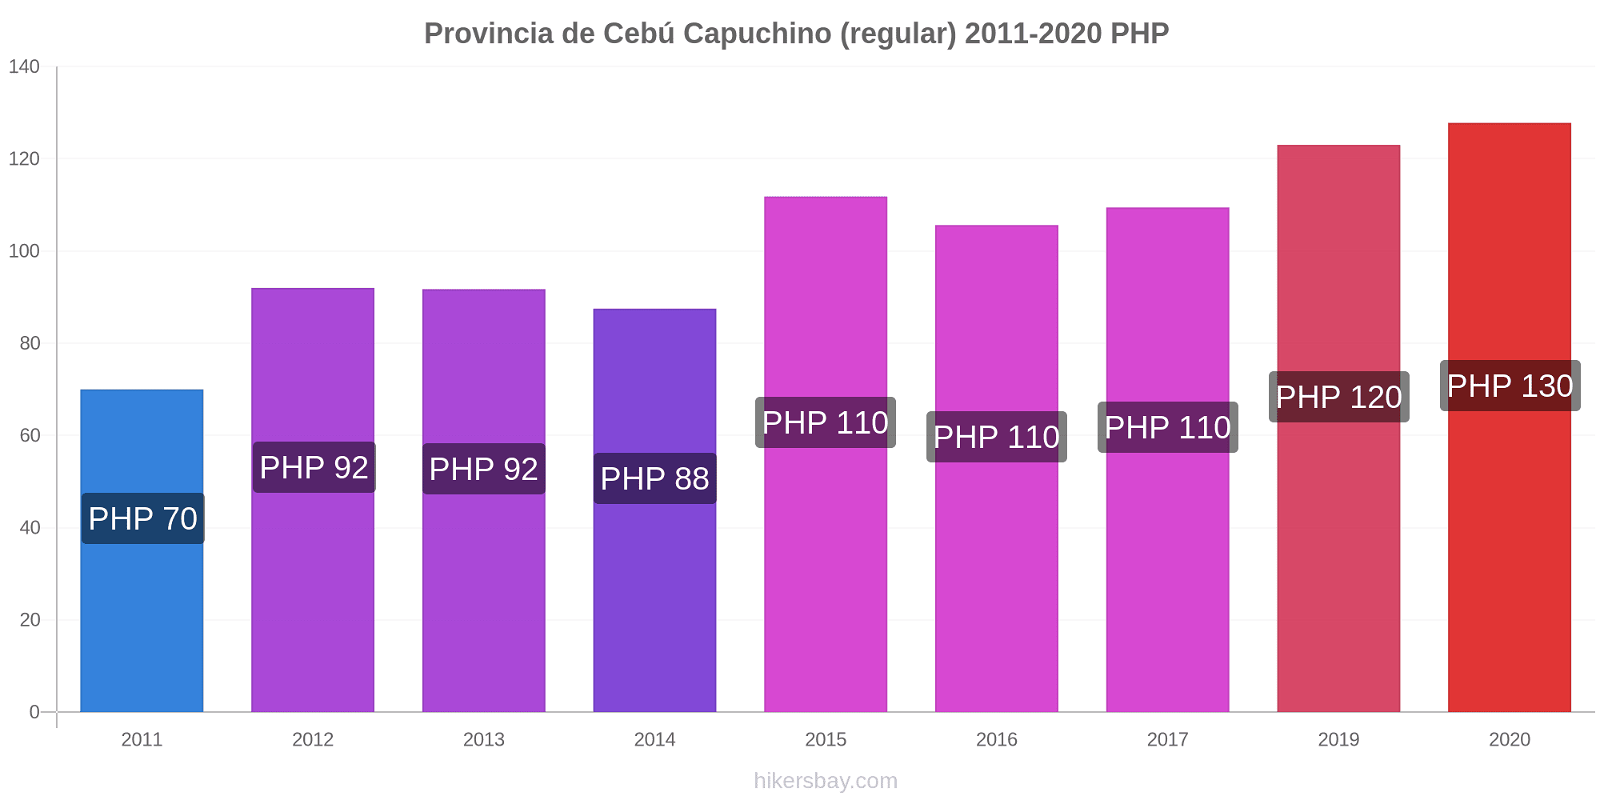 Provincia de Cebú cambios de precios Capuchino (regular) hikersbay.com